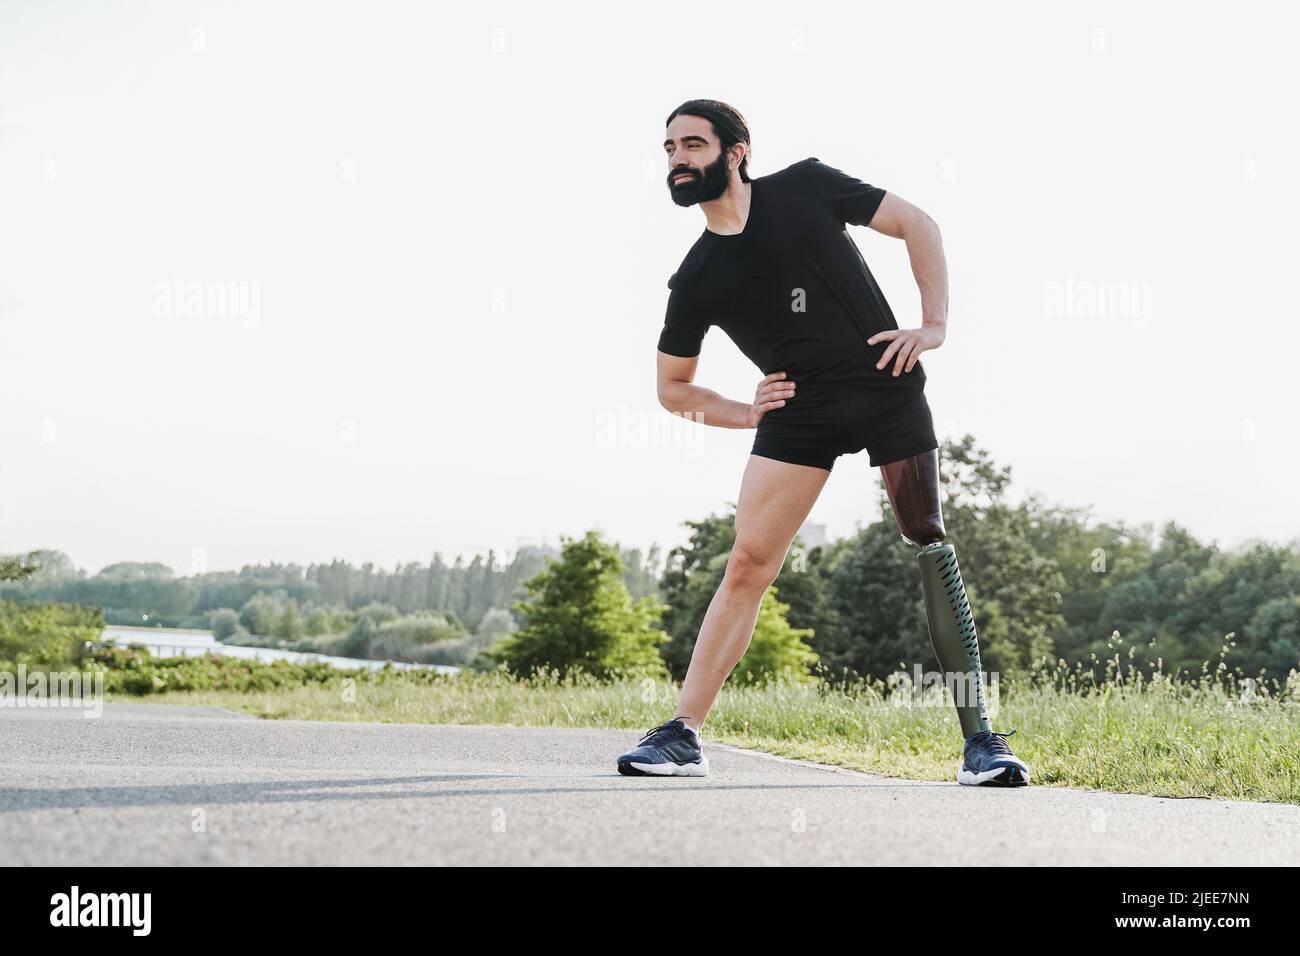 Fit Mann mit körperlicher Behinderung beim Aufwärmen Stretching vor dem Training Routine im Freien - Fokus auf Prothese Bein Stockfoto